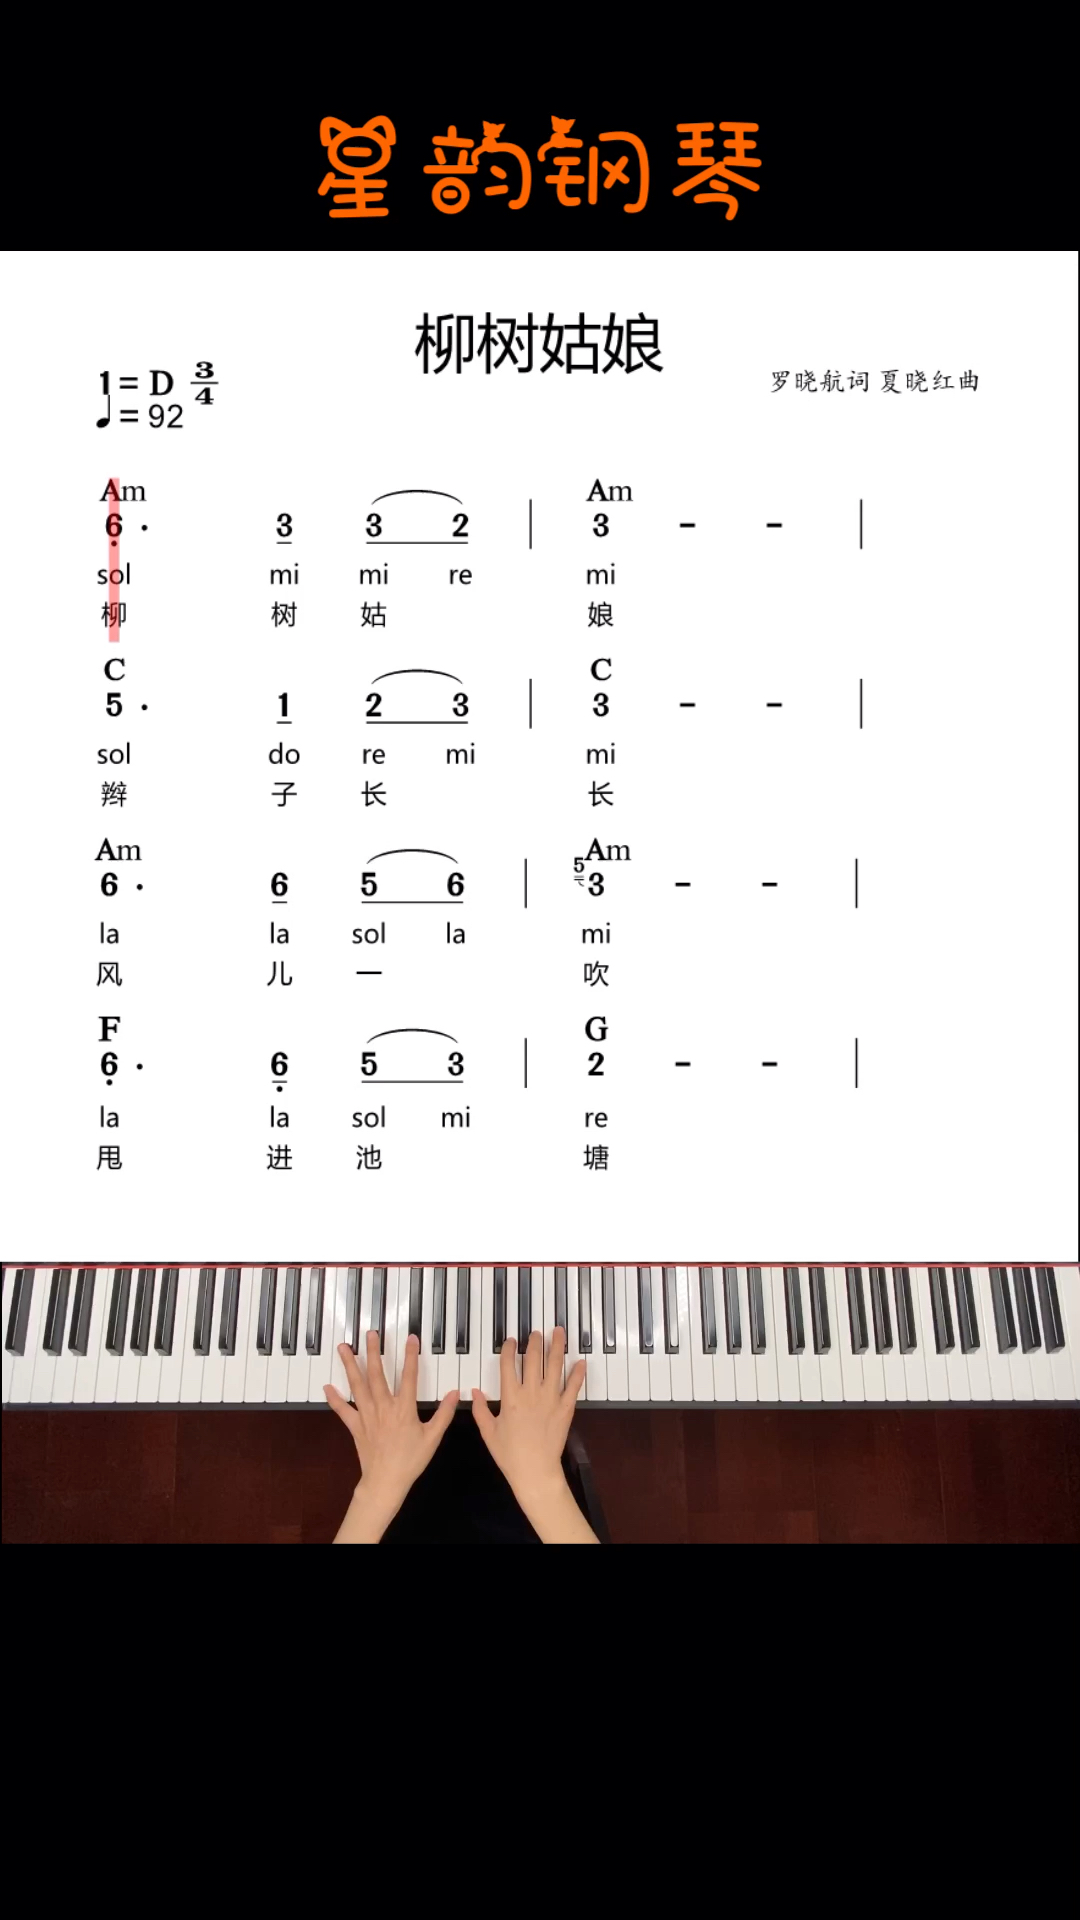 内蒙民歌钢琴弹奏教学图片